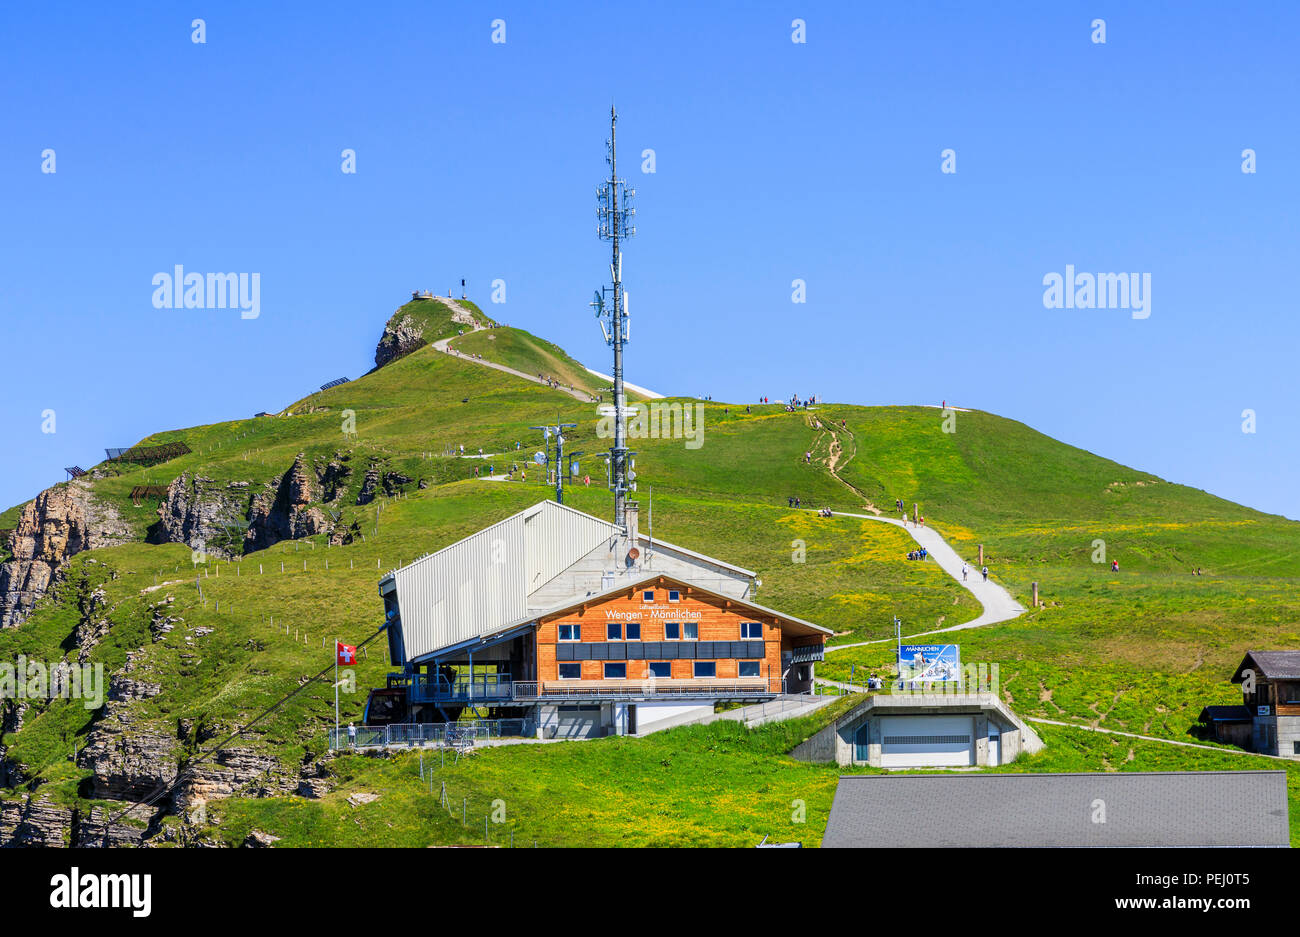 Maennlichen stazione della funivia al di sopra di Wengen nella regione di Jungfrau e percorso a piedi per il Royal View, Oberland bernese svizzera con cielo blu chiaro Foto Stock